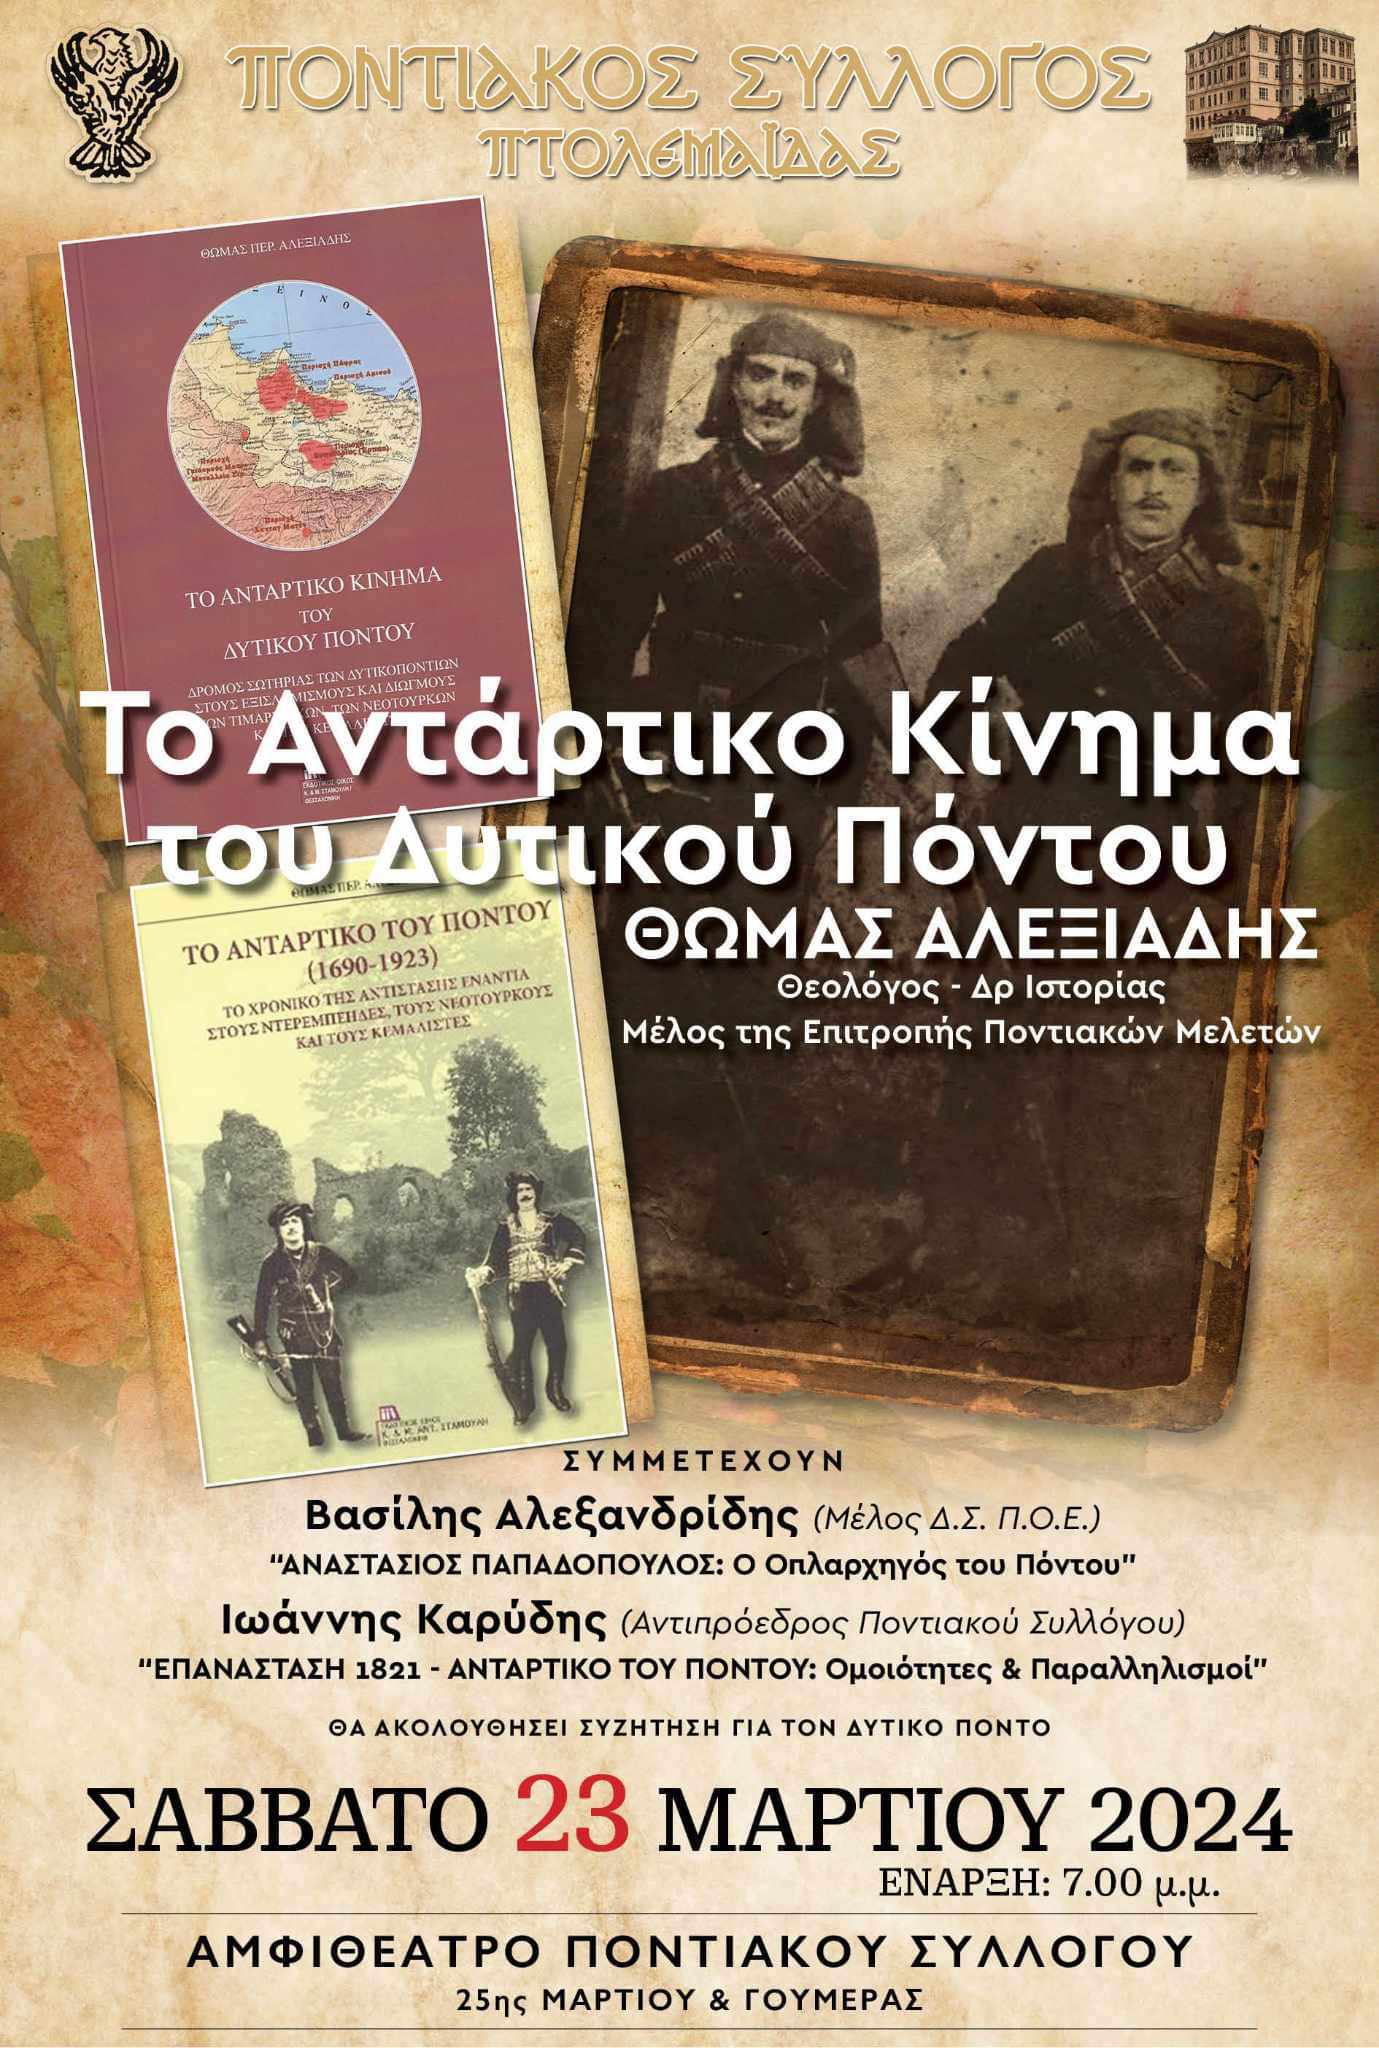 Εκδήλωση - αφιέρωμα για το Αντάρτικο σωτηρίας των Ελλήνων του Δυτικού Πόντου , με τον Θωμά Αλεξιάδη, από τον Ποντιακό Σύλλογο Πτολεμαϊδας